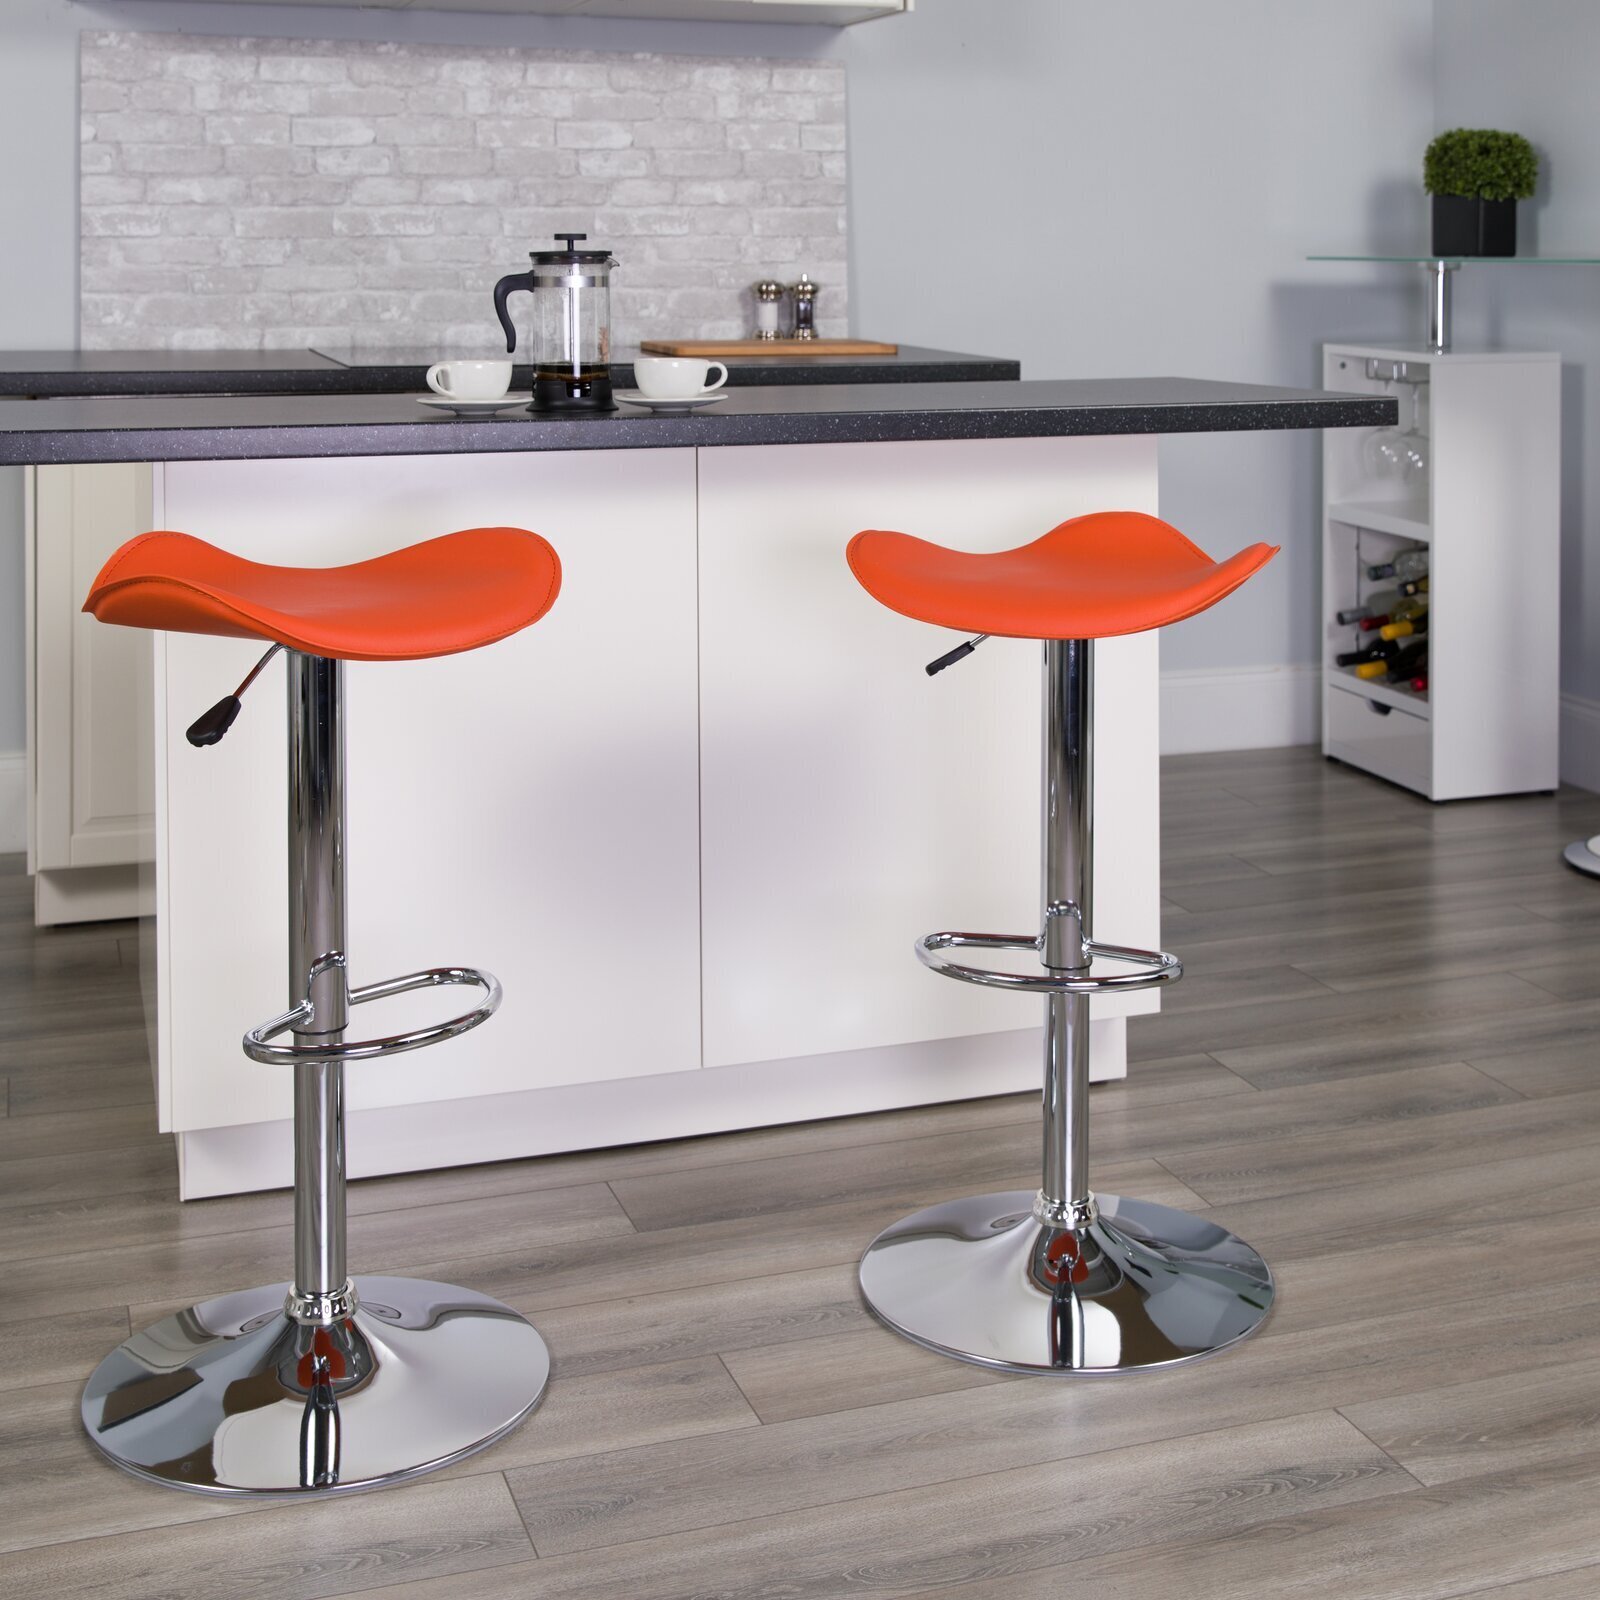 Minimalist orange bar stool